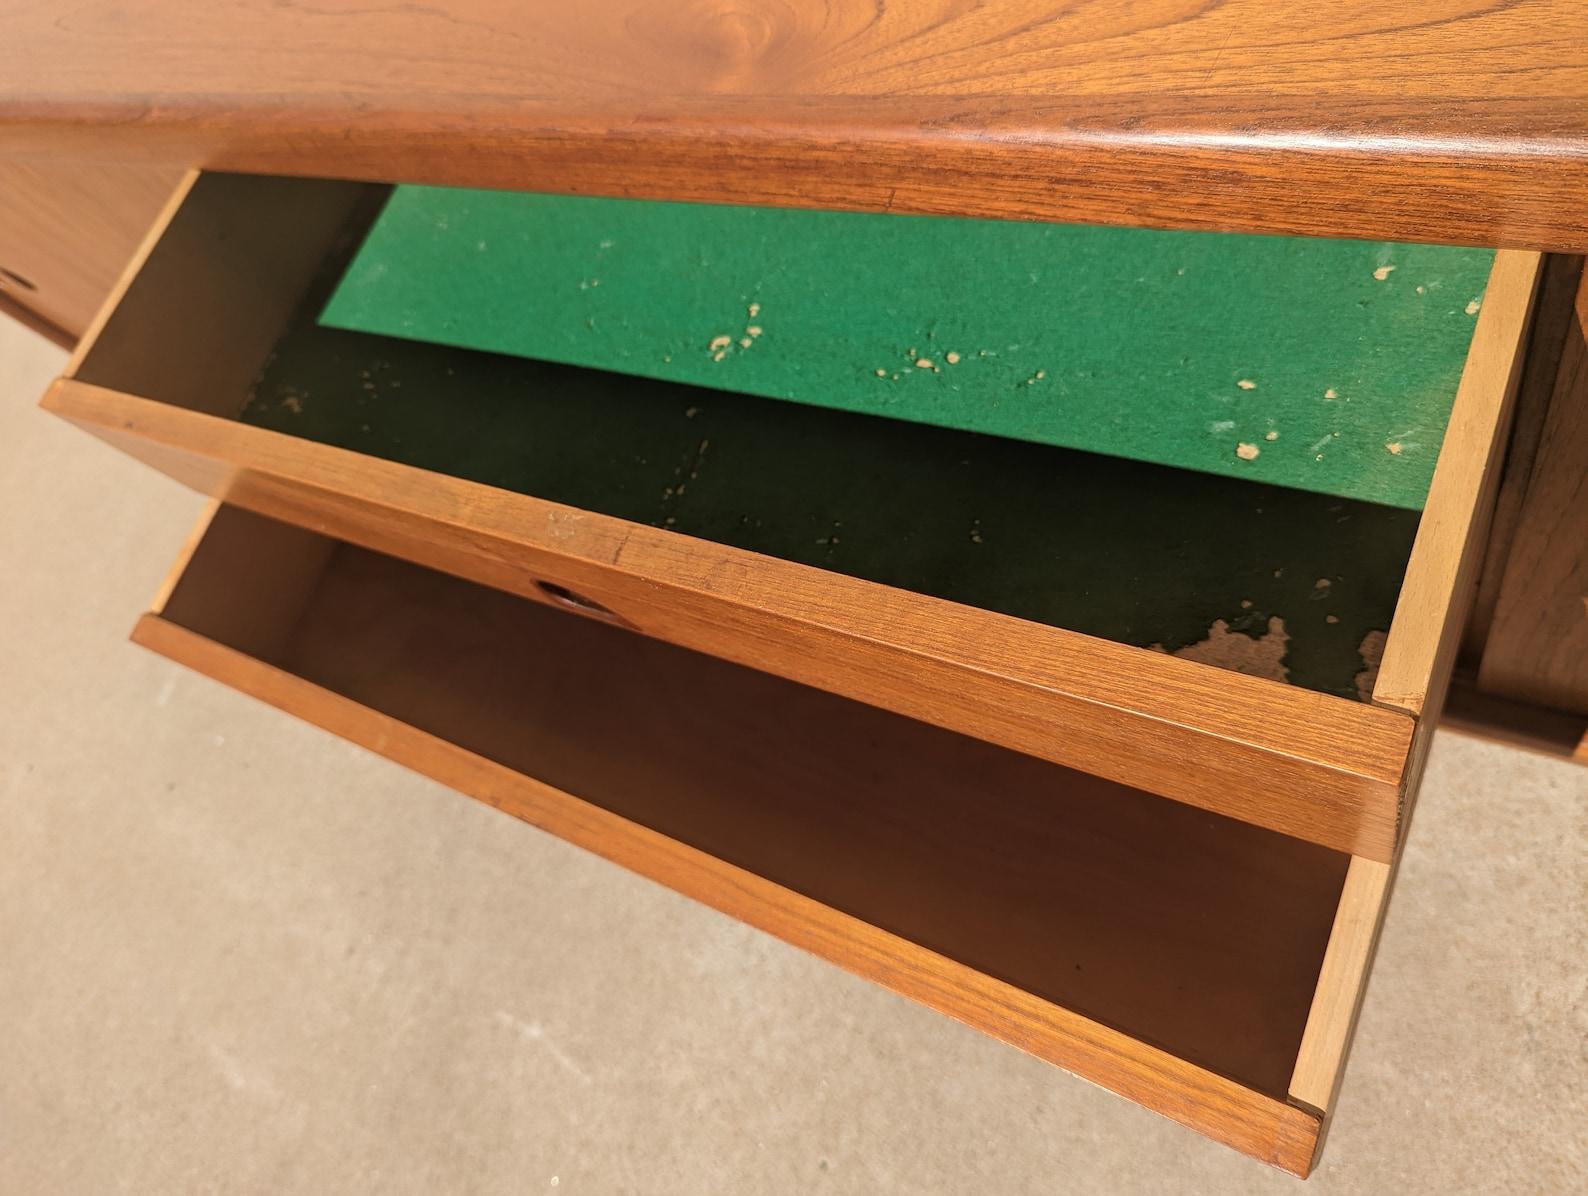 Mid Century Danish Modern Bramin Sideboard

Überdurchschnittlicher Vintage-Zustand und strukturell gesund. Hat einige erwartete leichte Oberfläche Verschleiß und Kratzer. Hat ein paar kleine Dellen an den Kanten. Hat einen 1,5